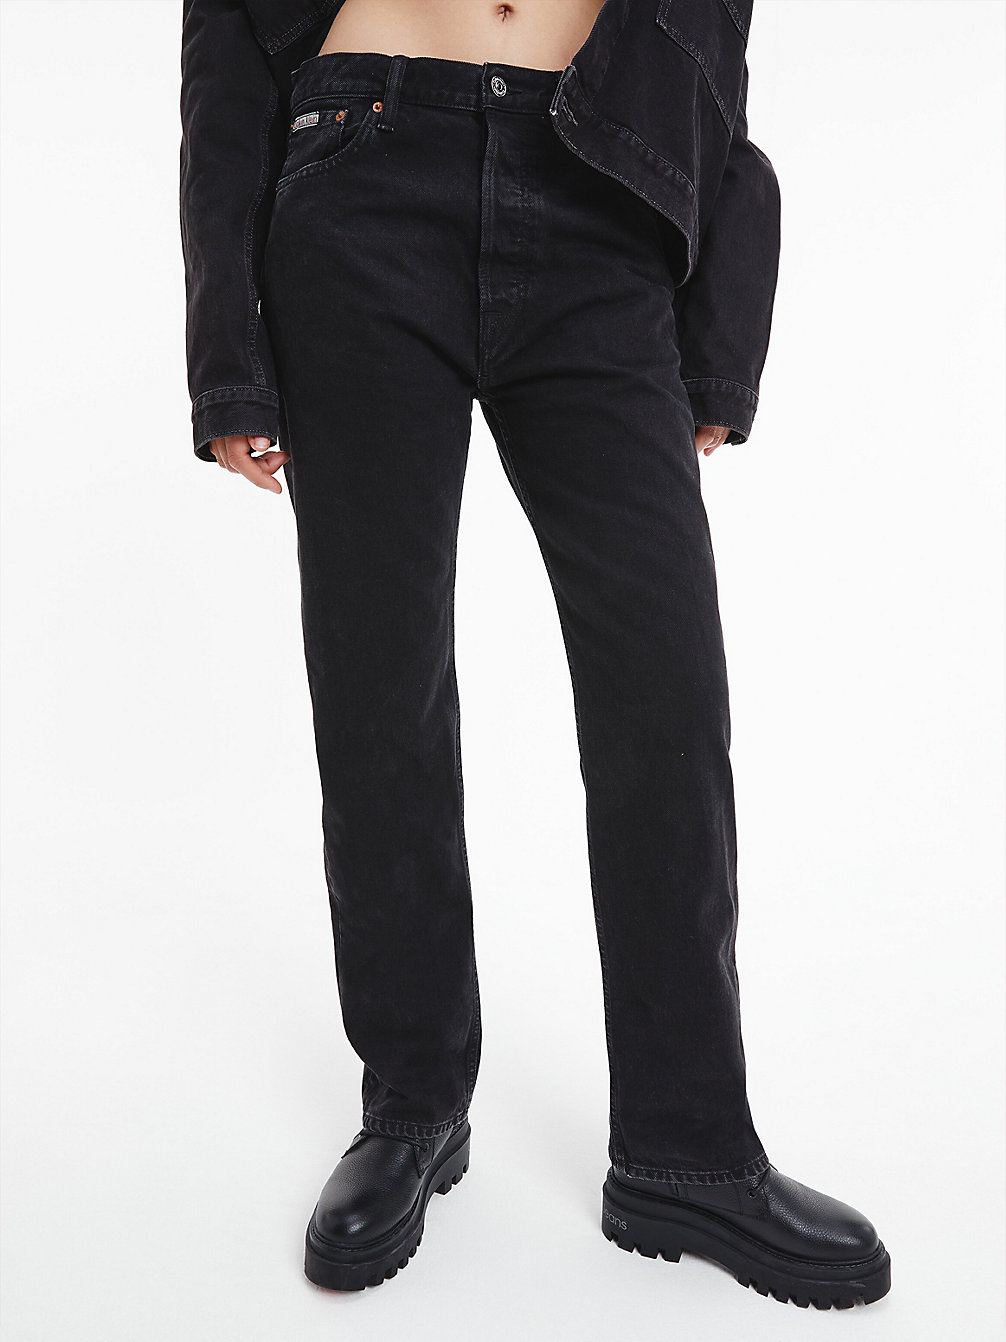 DENIM BLACK > Unisex Straight Jeans - CK Standards > undefined unisex - Calvin Klein